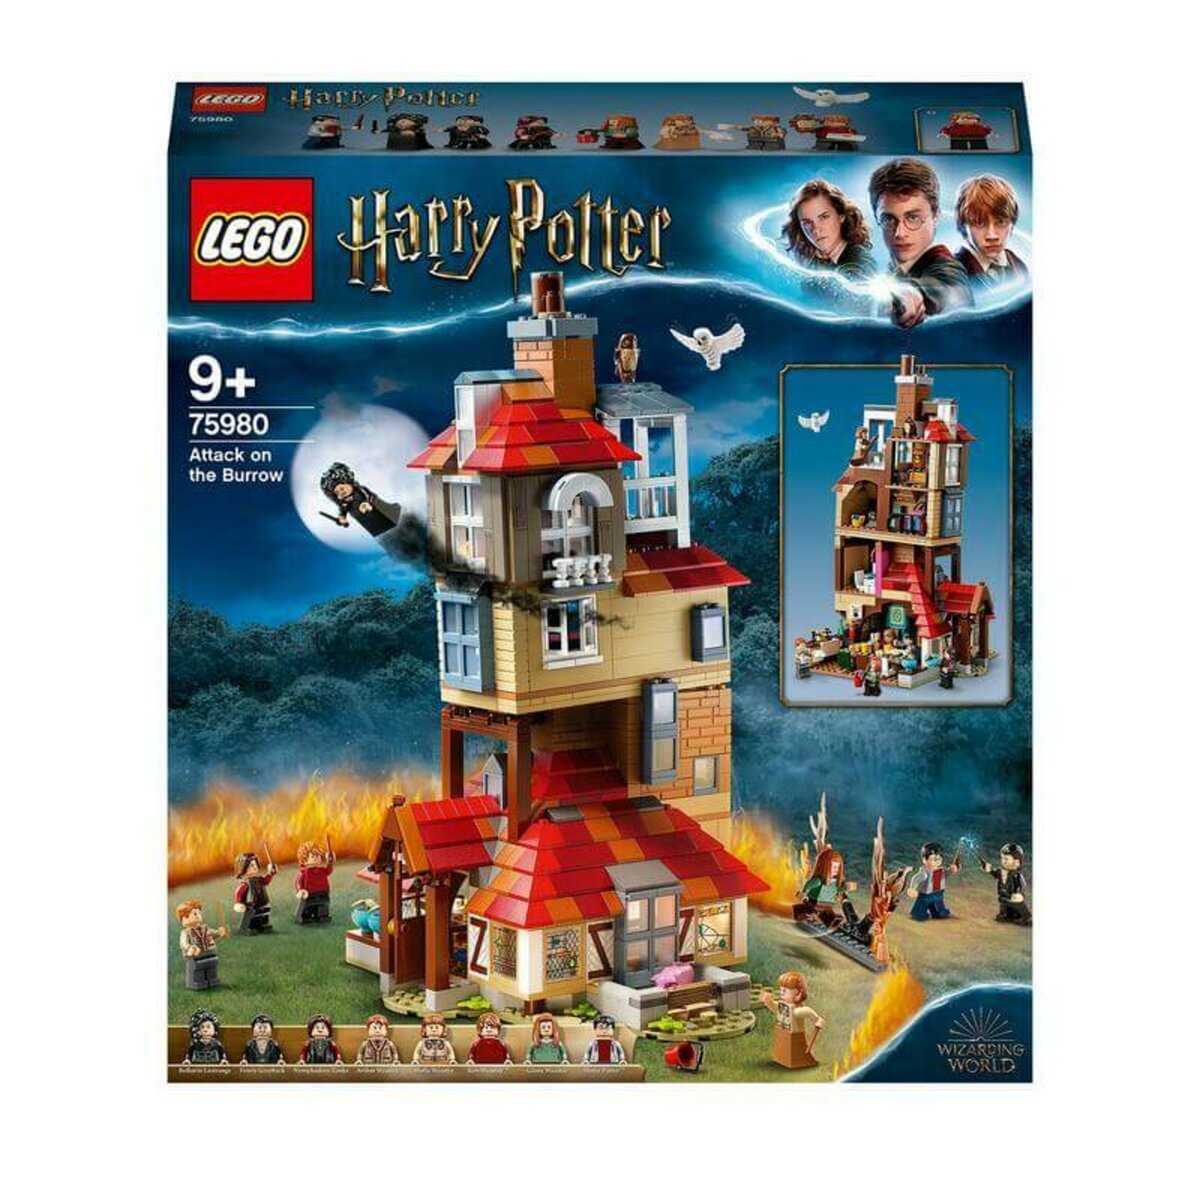 Lego®harry potter™76418 le calendrier de l'avent, jeux de constructions &  maquettes